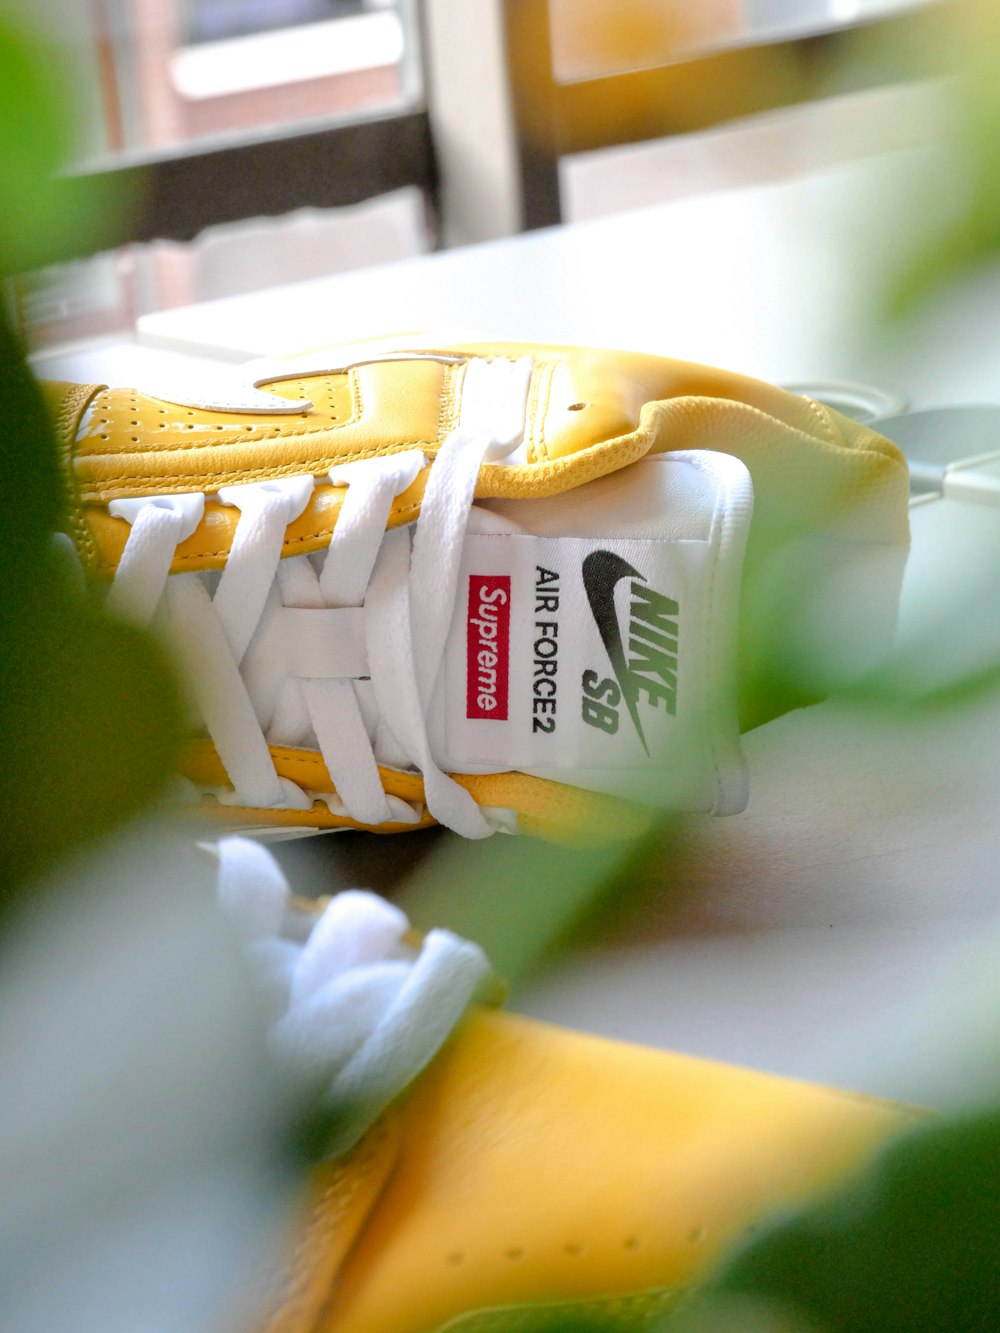 Foto Par de zapatillas bajas Nike SB Supreme blancas y amarillas – Imagen  Los Angeles gratis en Unsplash